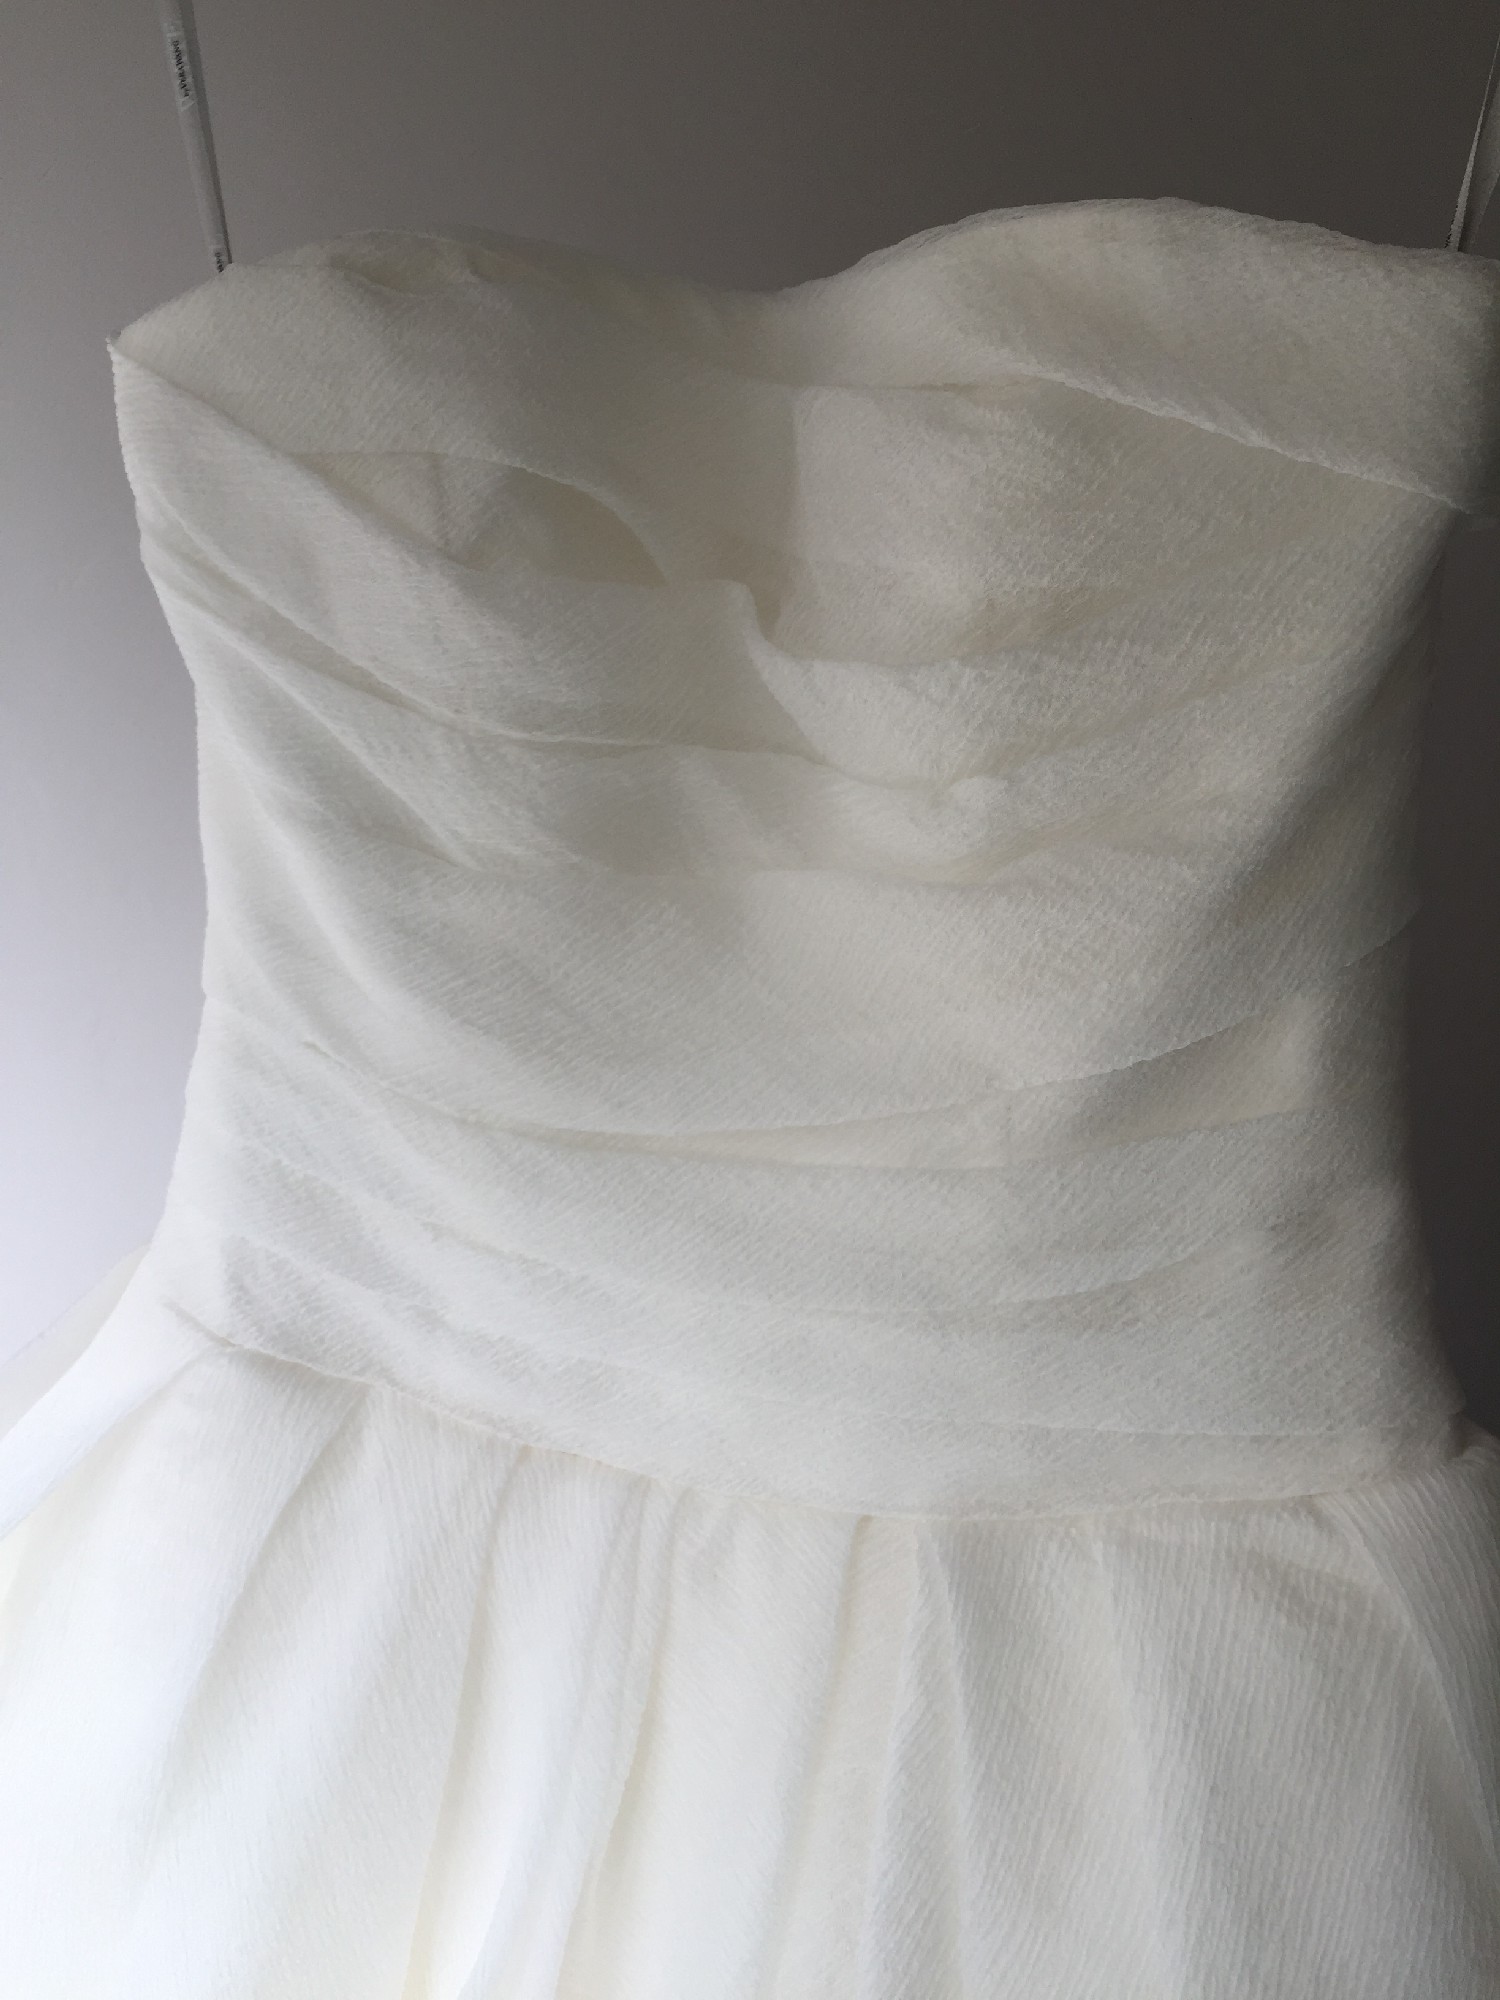 Vera Wang White, Textured Organza Preowned Wedding Dress Save 70% ...